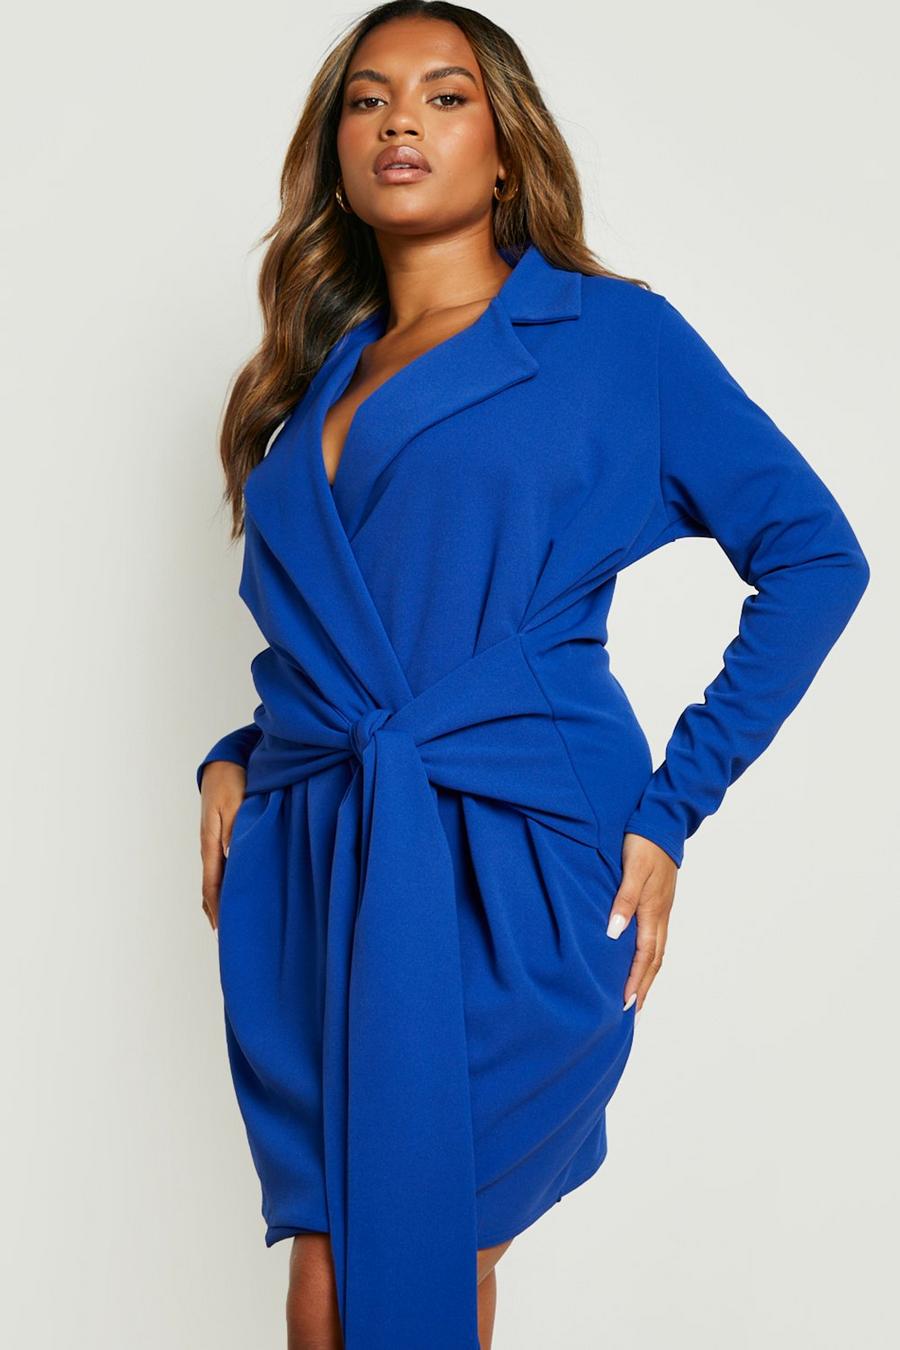 קובלט azul שמלת בלייזר עם סרט וחגורה, למידות גדולות